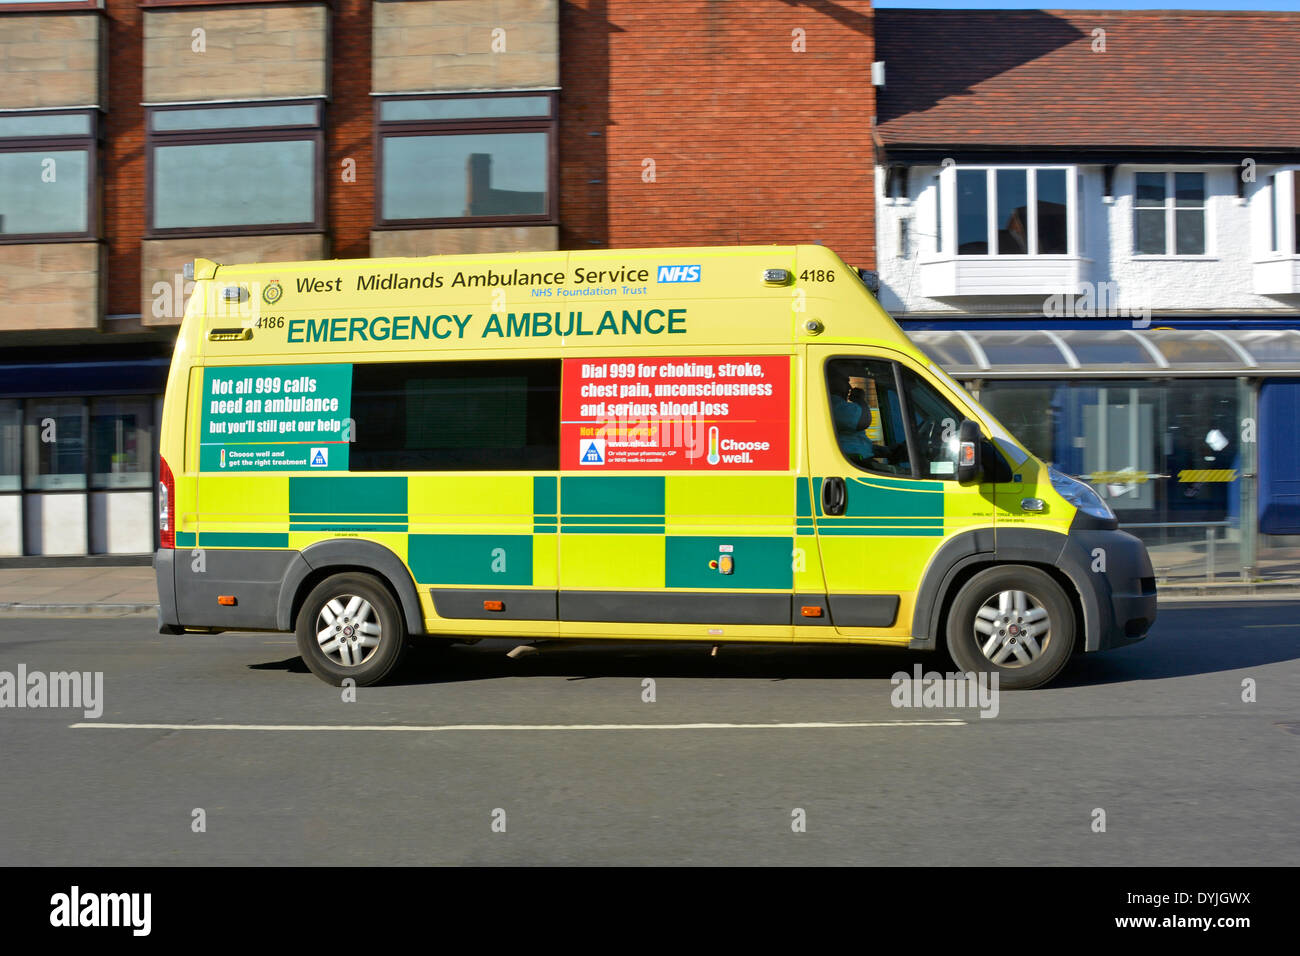 West Midlands NHS emergency ambulance with advertising panels explaining the correct use of 999 calls Stratford upon Avon Warwickshire England UK Stock Photo